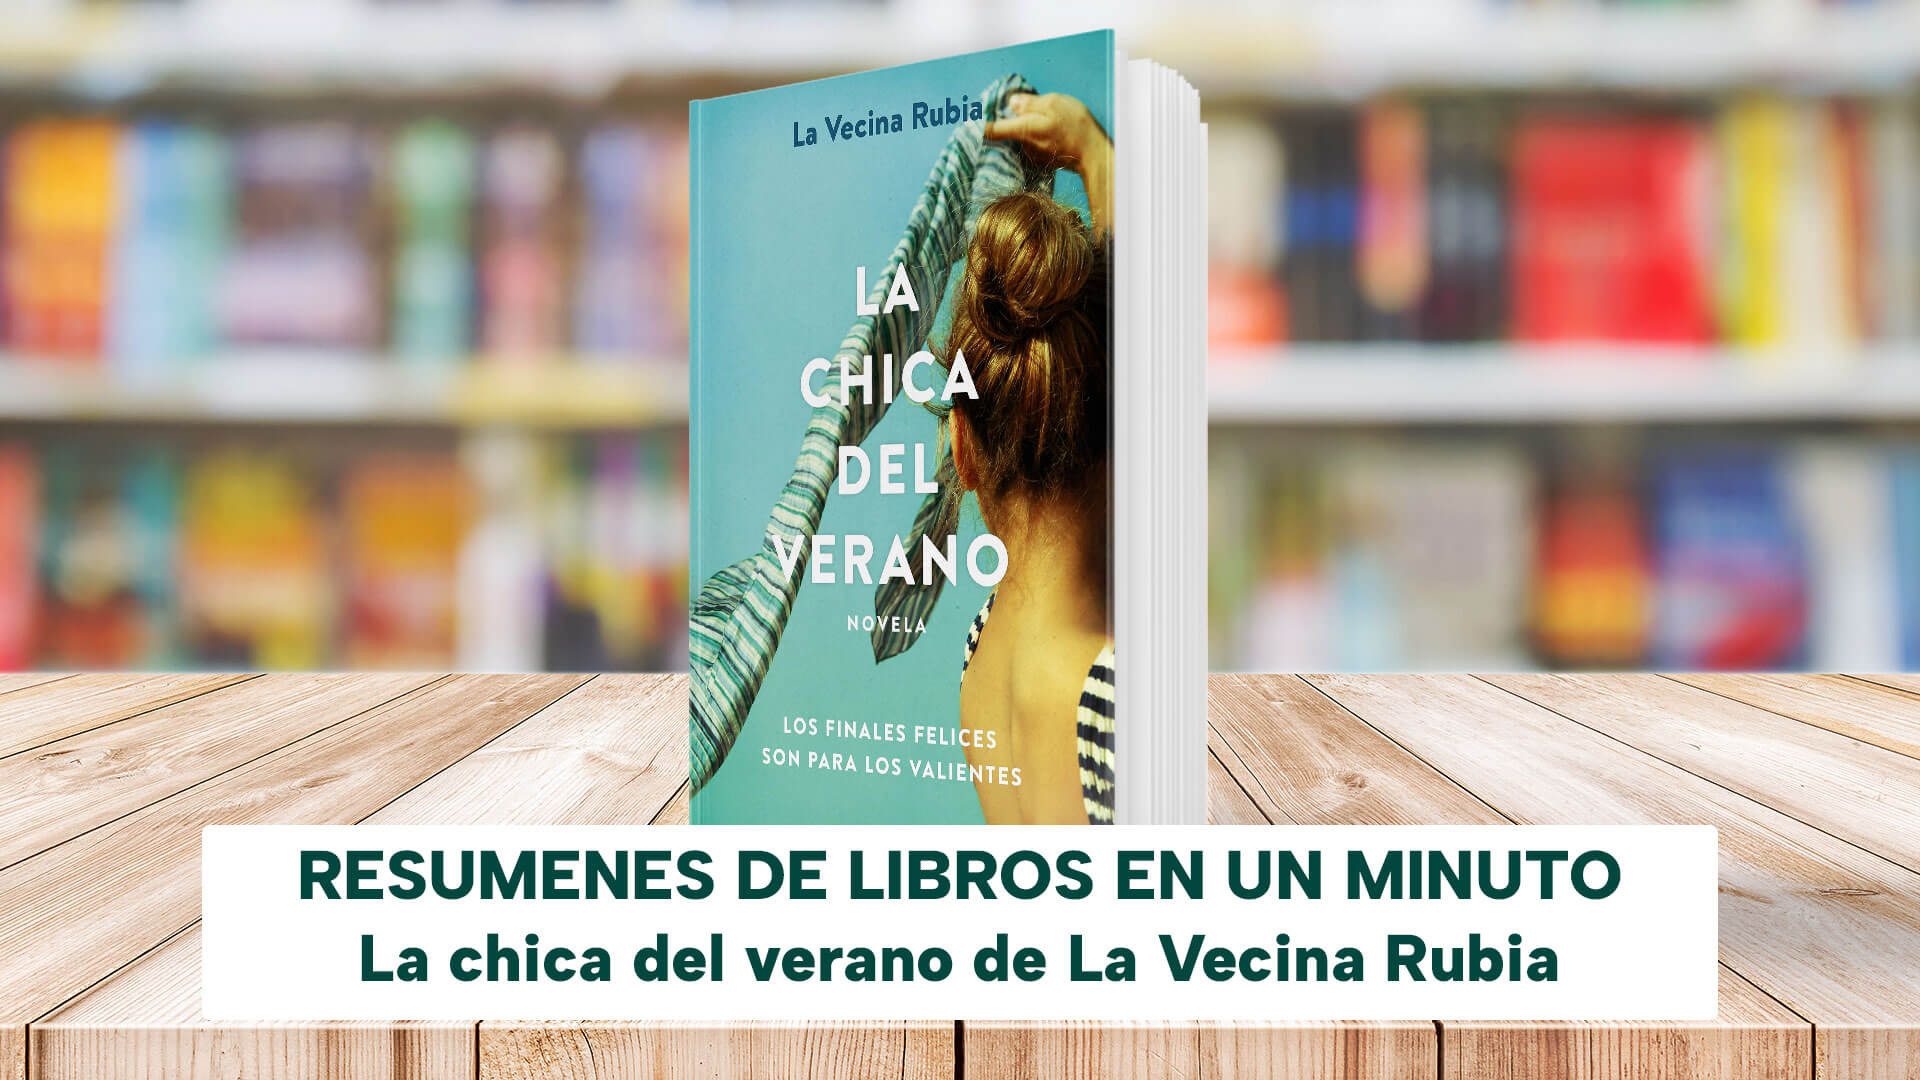 La chica del verano (Verano, #3) by La Vecina Rubia